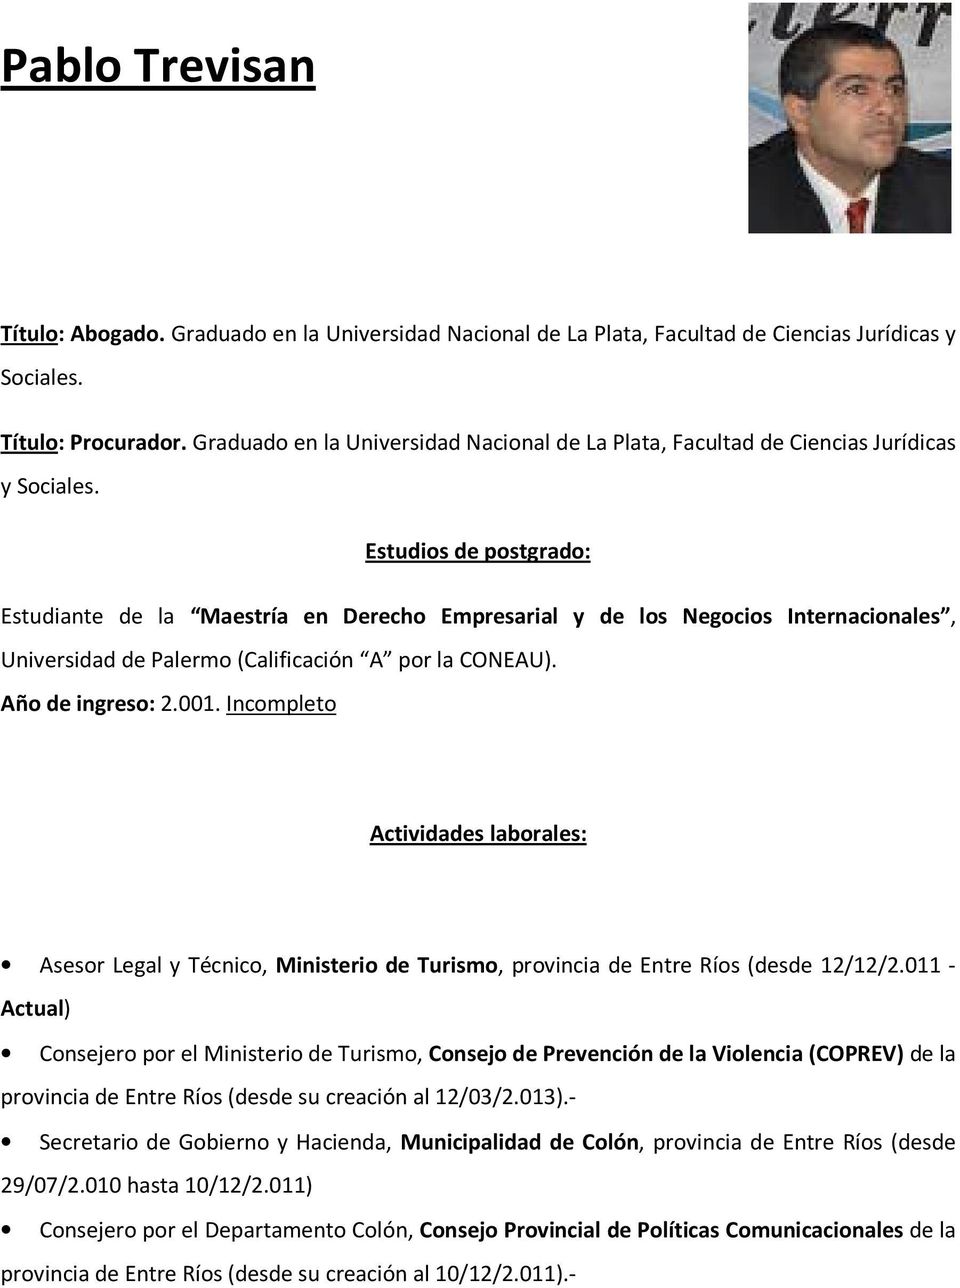 Estudios de postgrado: Estudiante de la Maestría en Derecho Empresarial y de los Negocios Internacionales, Universidad de Palermo (Calificación A por la CONEAU). Año de ingreso: 2.001.